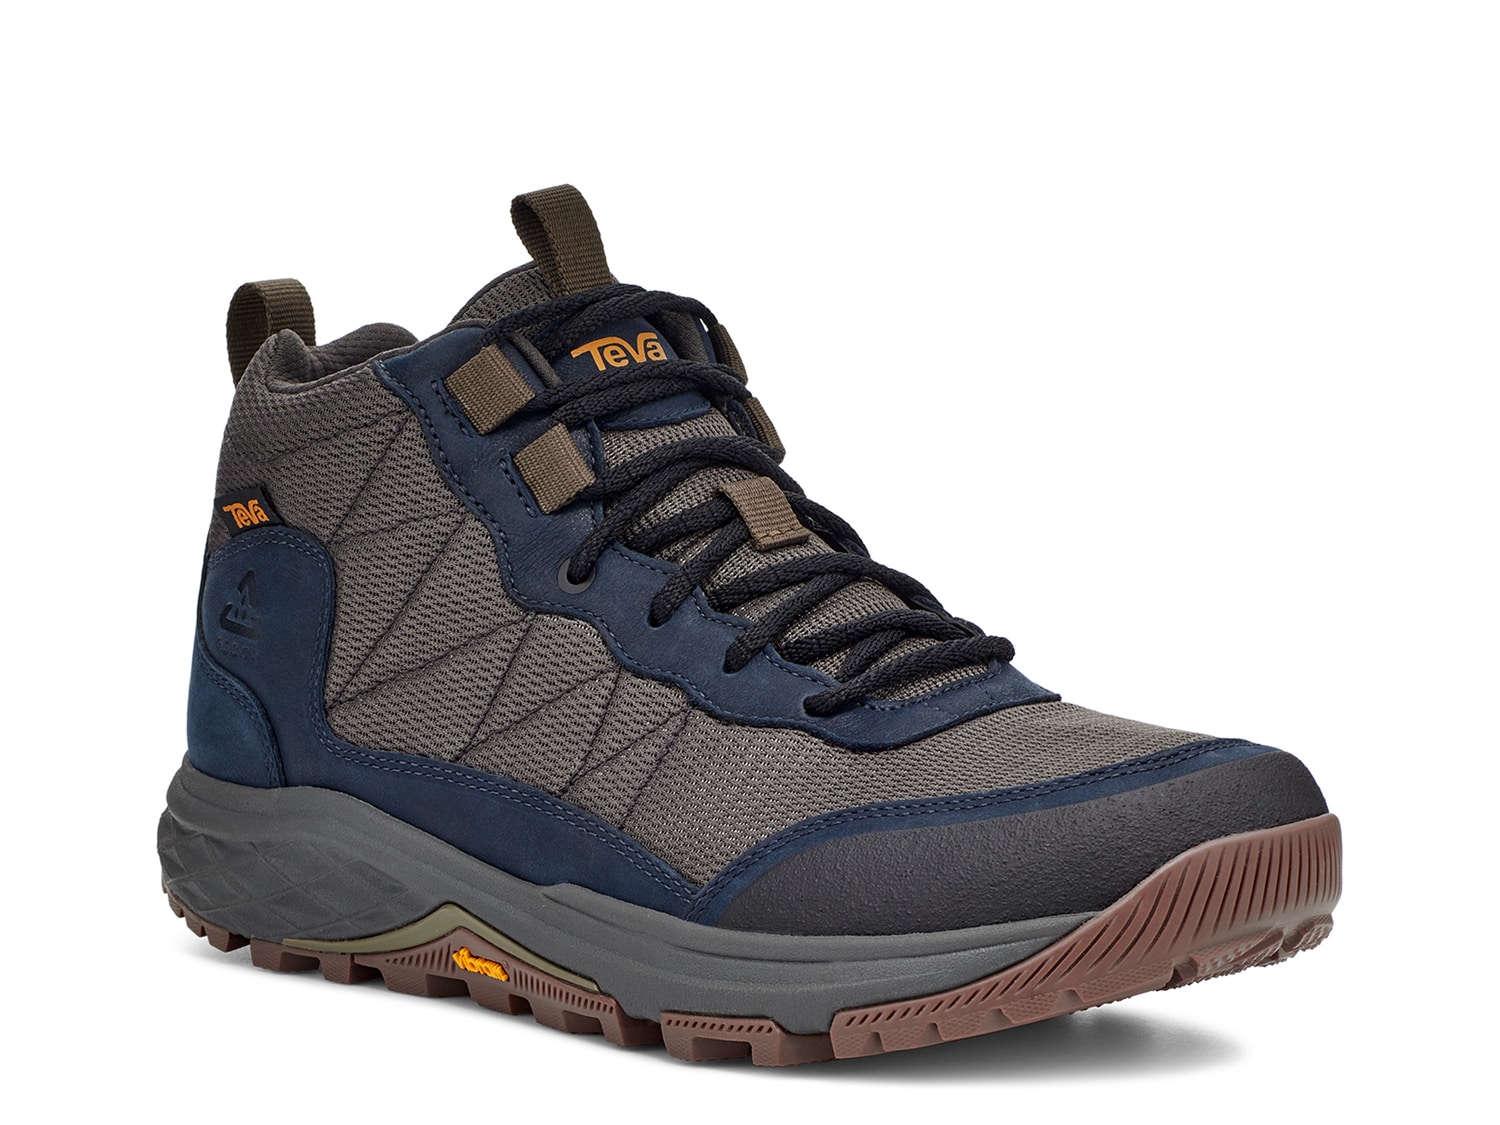 Teva Ridgeview Hiking Shoe Men's - Free Shipping | DSW